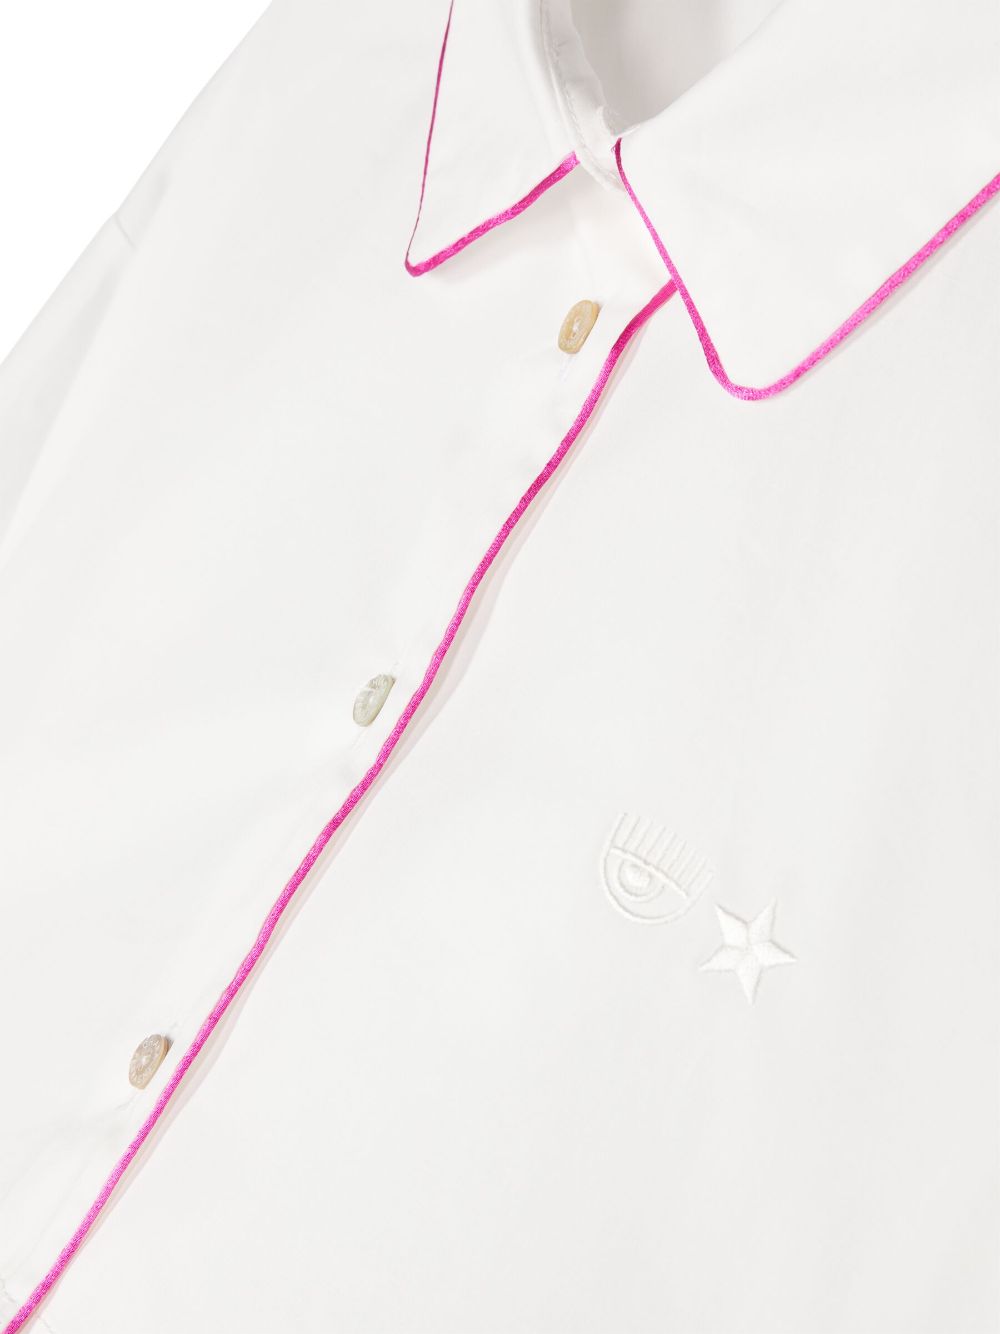 Camicia bianca con dettagli rosa bambina